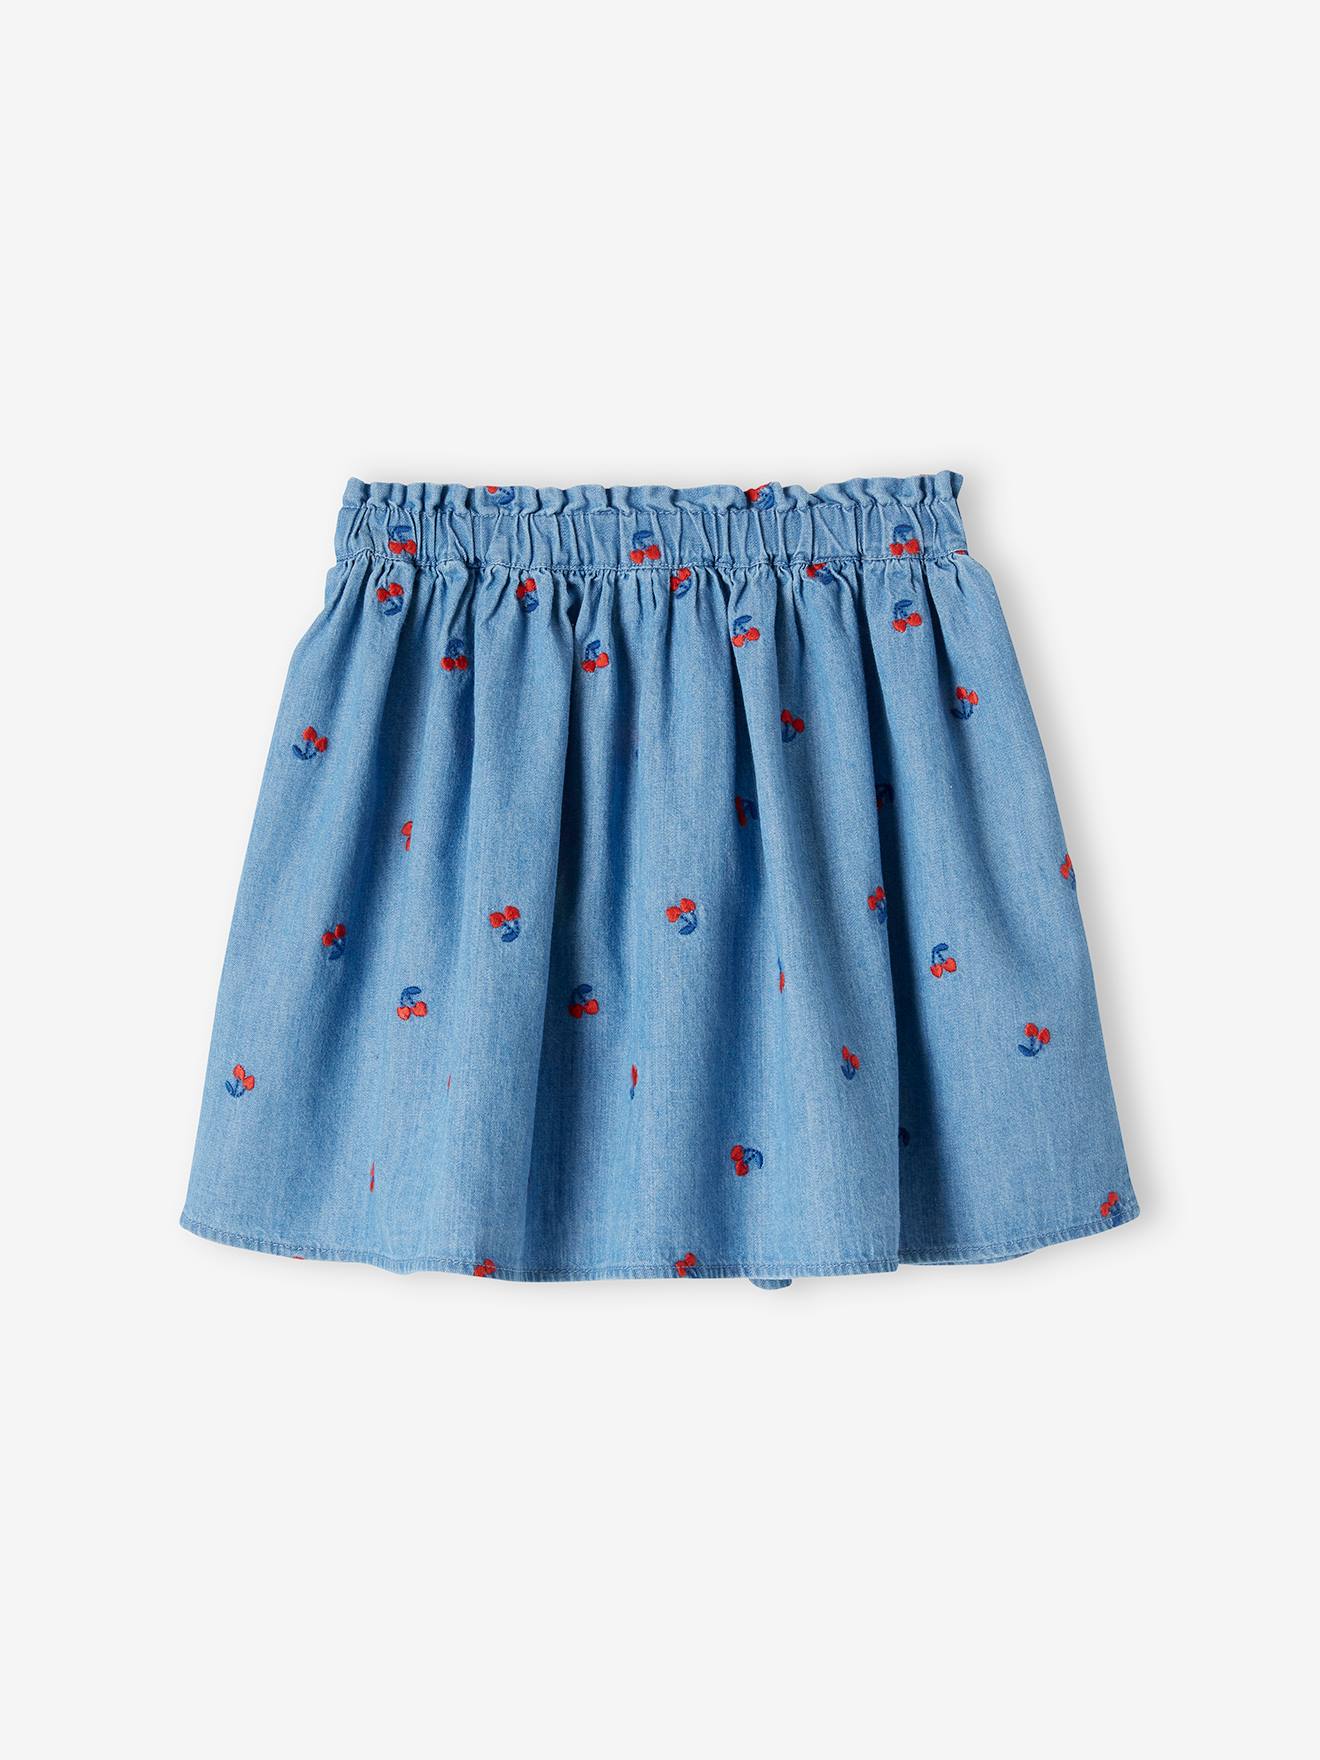 Denim Skirt with Embroidered Cherries for Girls - blue dark wasched, Girls